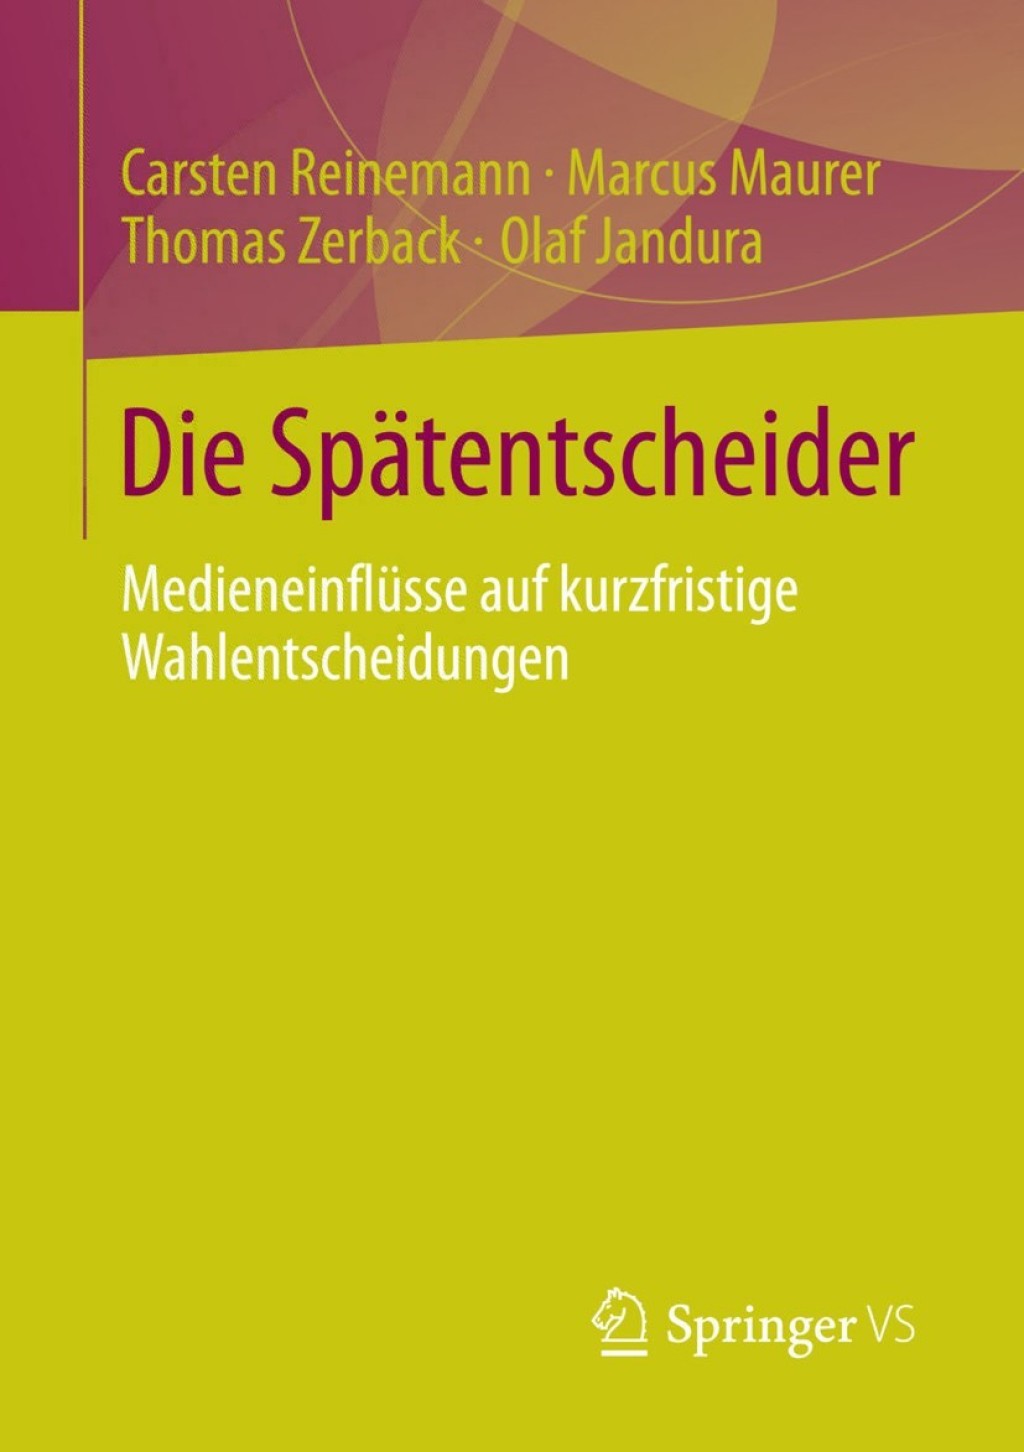 Die SpÃ¤tentscheider (eBook Rental) - Carsten Reinemann; Marcus Maurer; Thomas Zerback; Olaf Jandura,